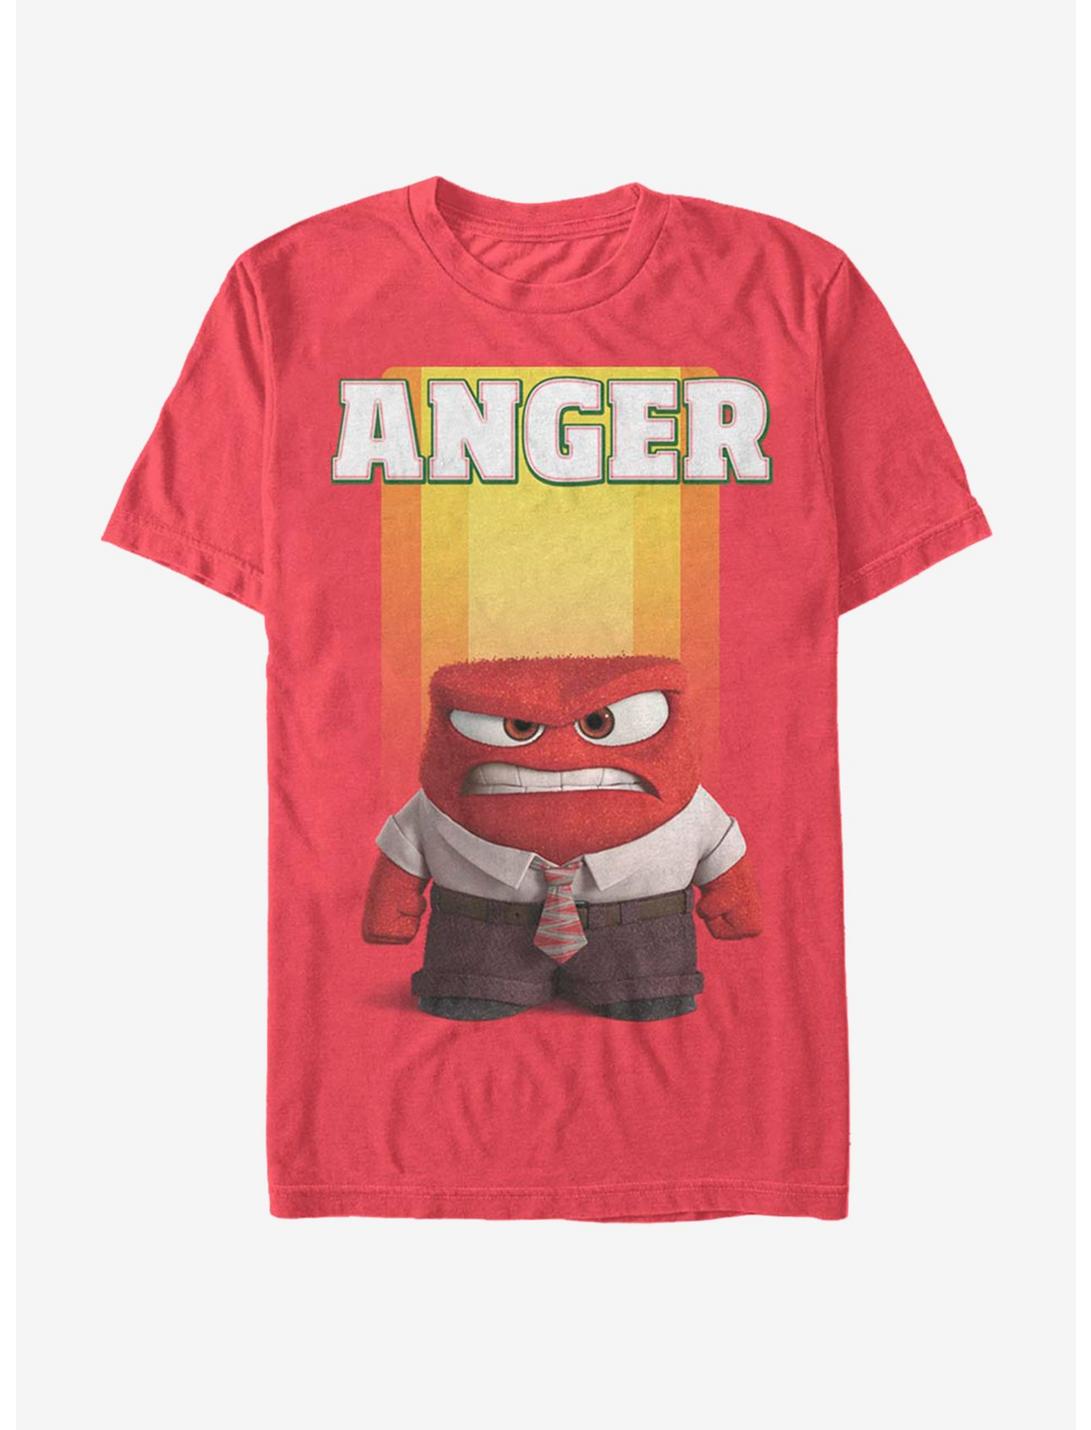 Disney Pixar Inside Out Anger T-Shirt - RED